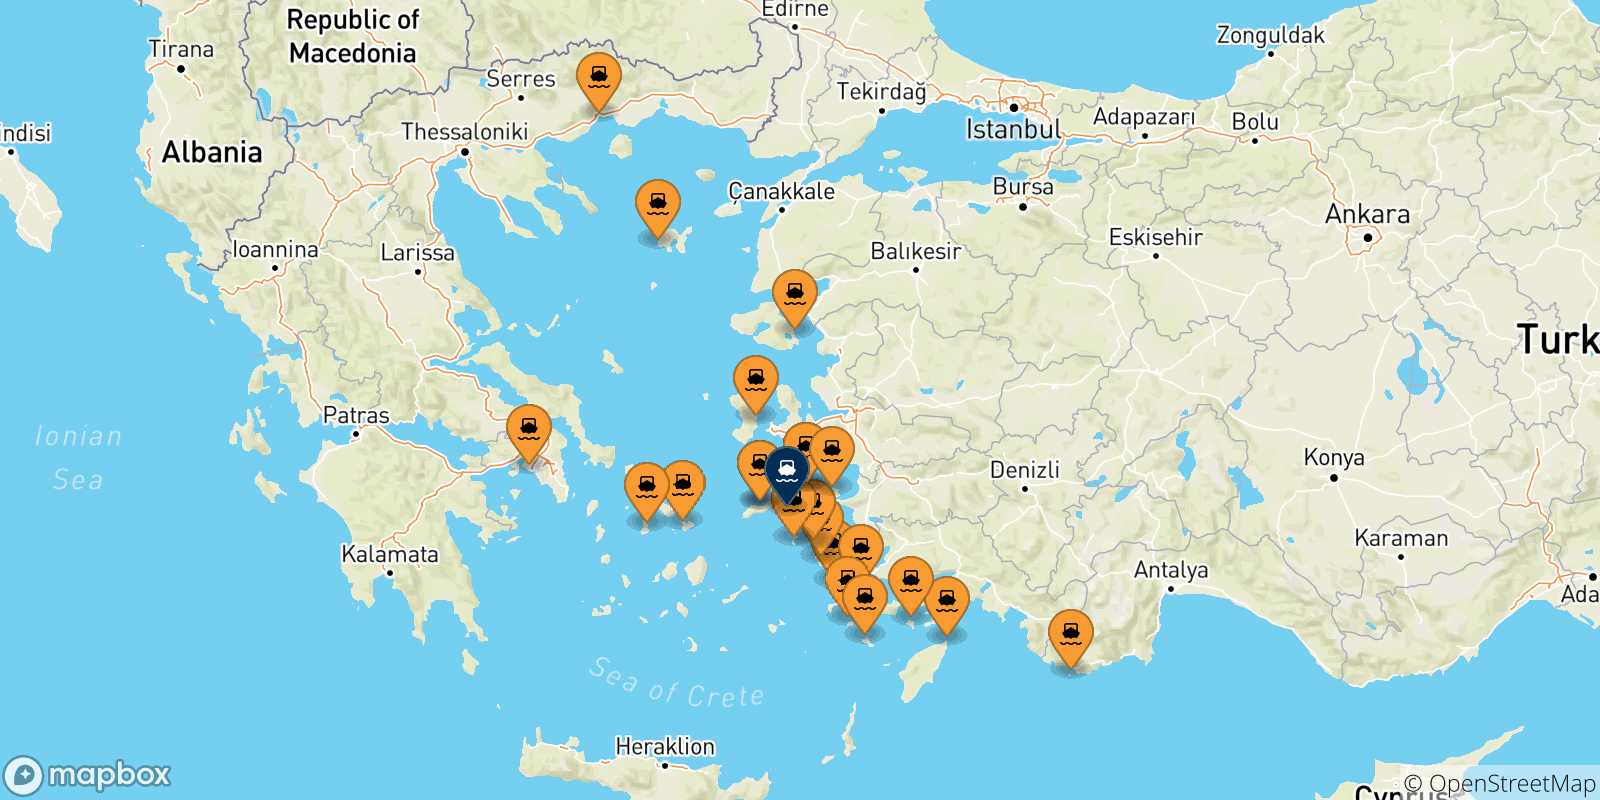 Mappa delle possibili rotte tra la Grecia e Fourni